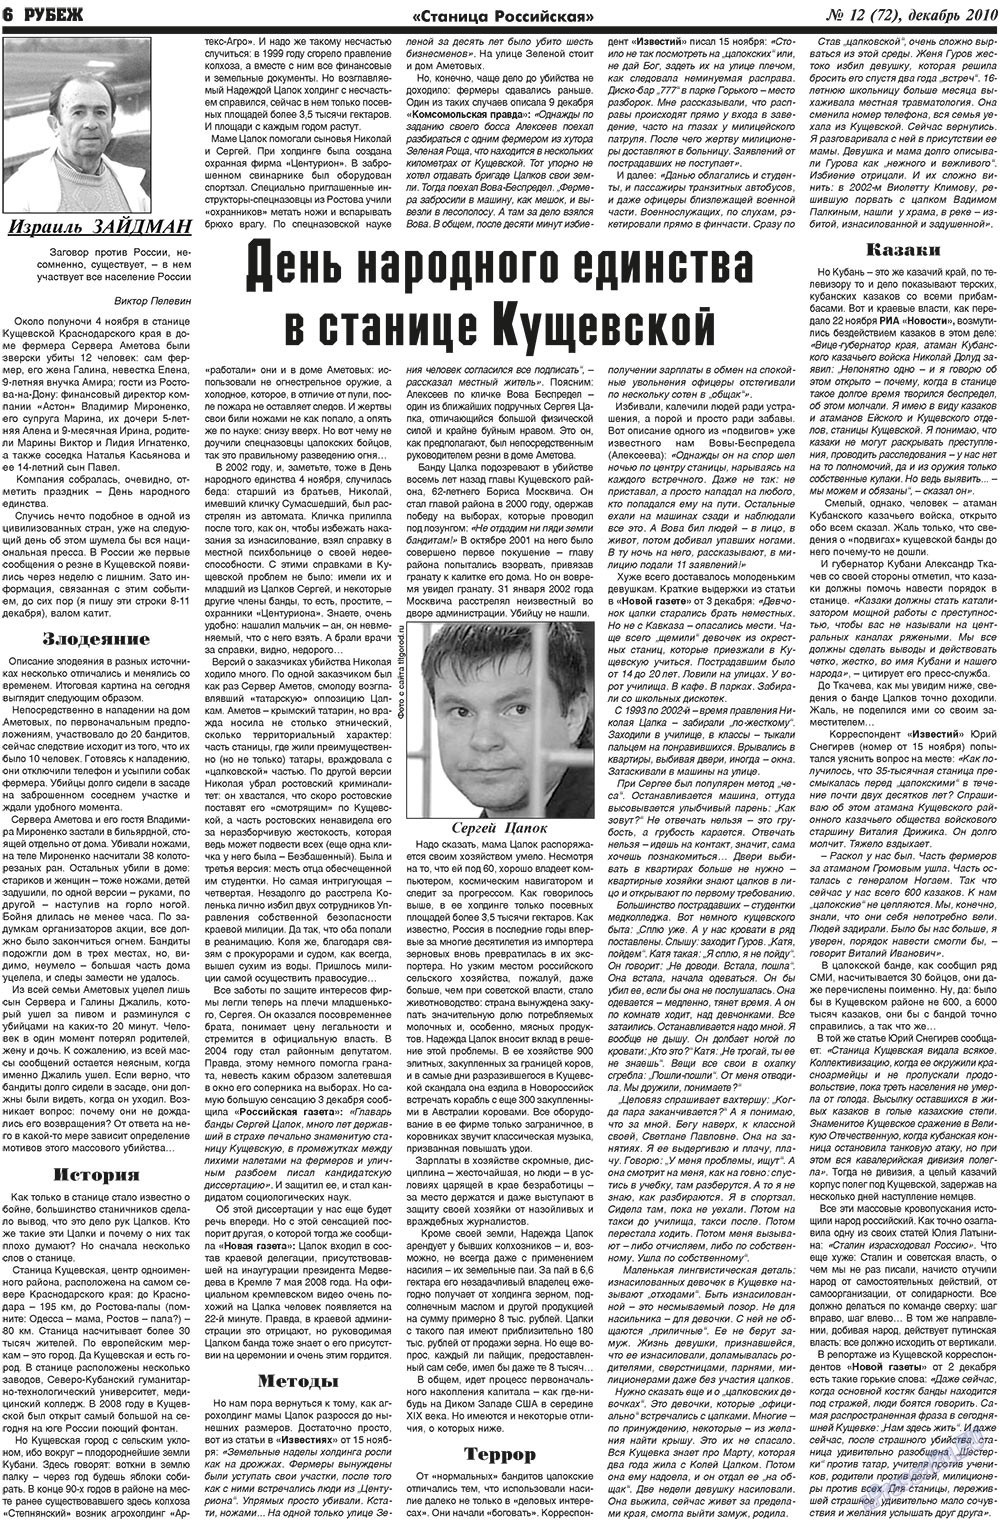 Рубеж (газета). 2010 год, номер 12, стр. 6